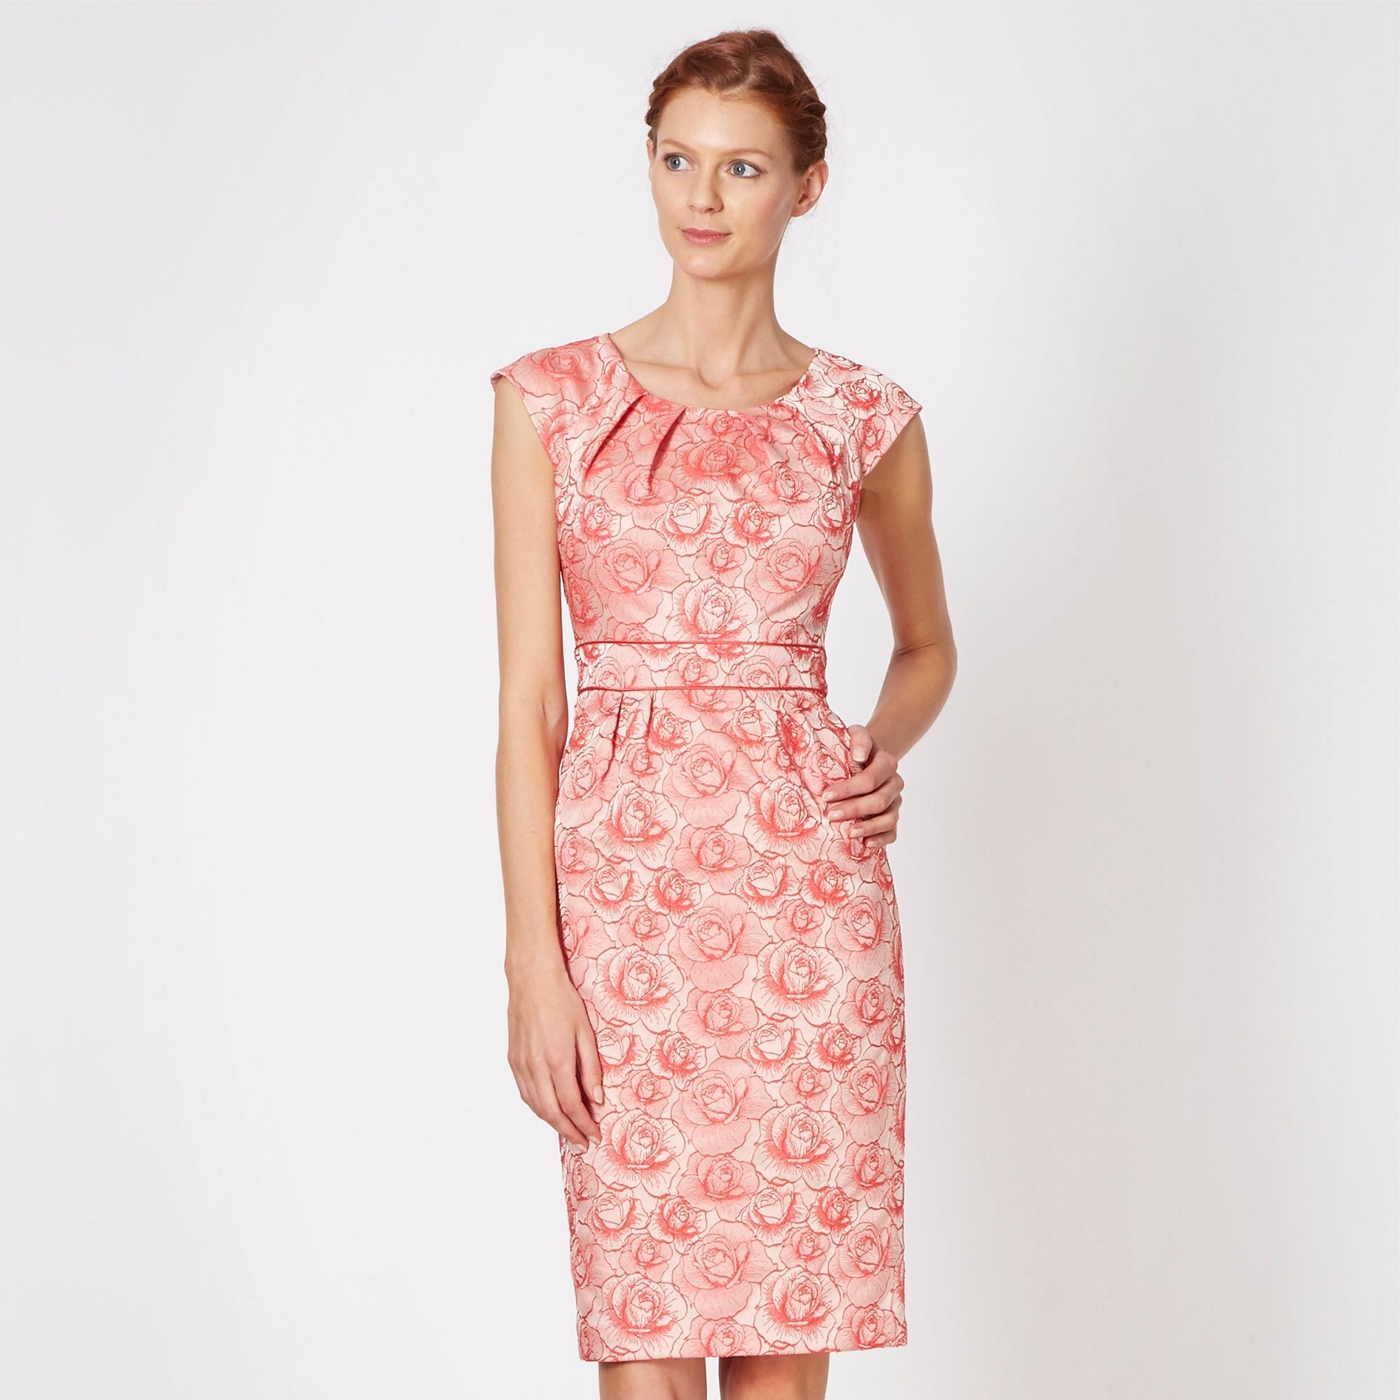 Debut Designer pink jacquard floral shift dress